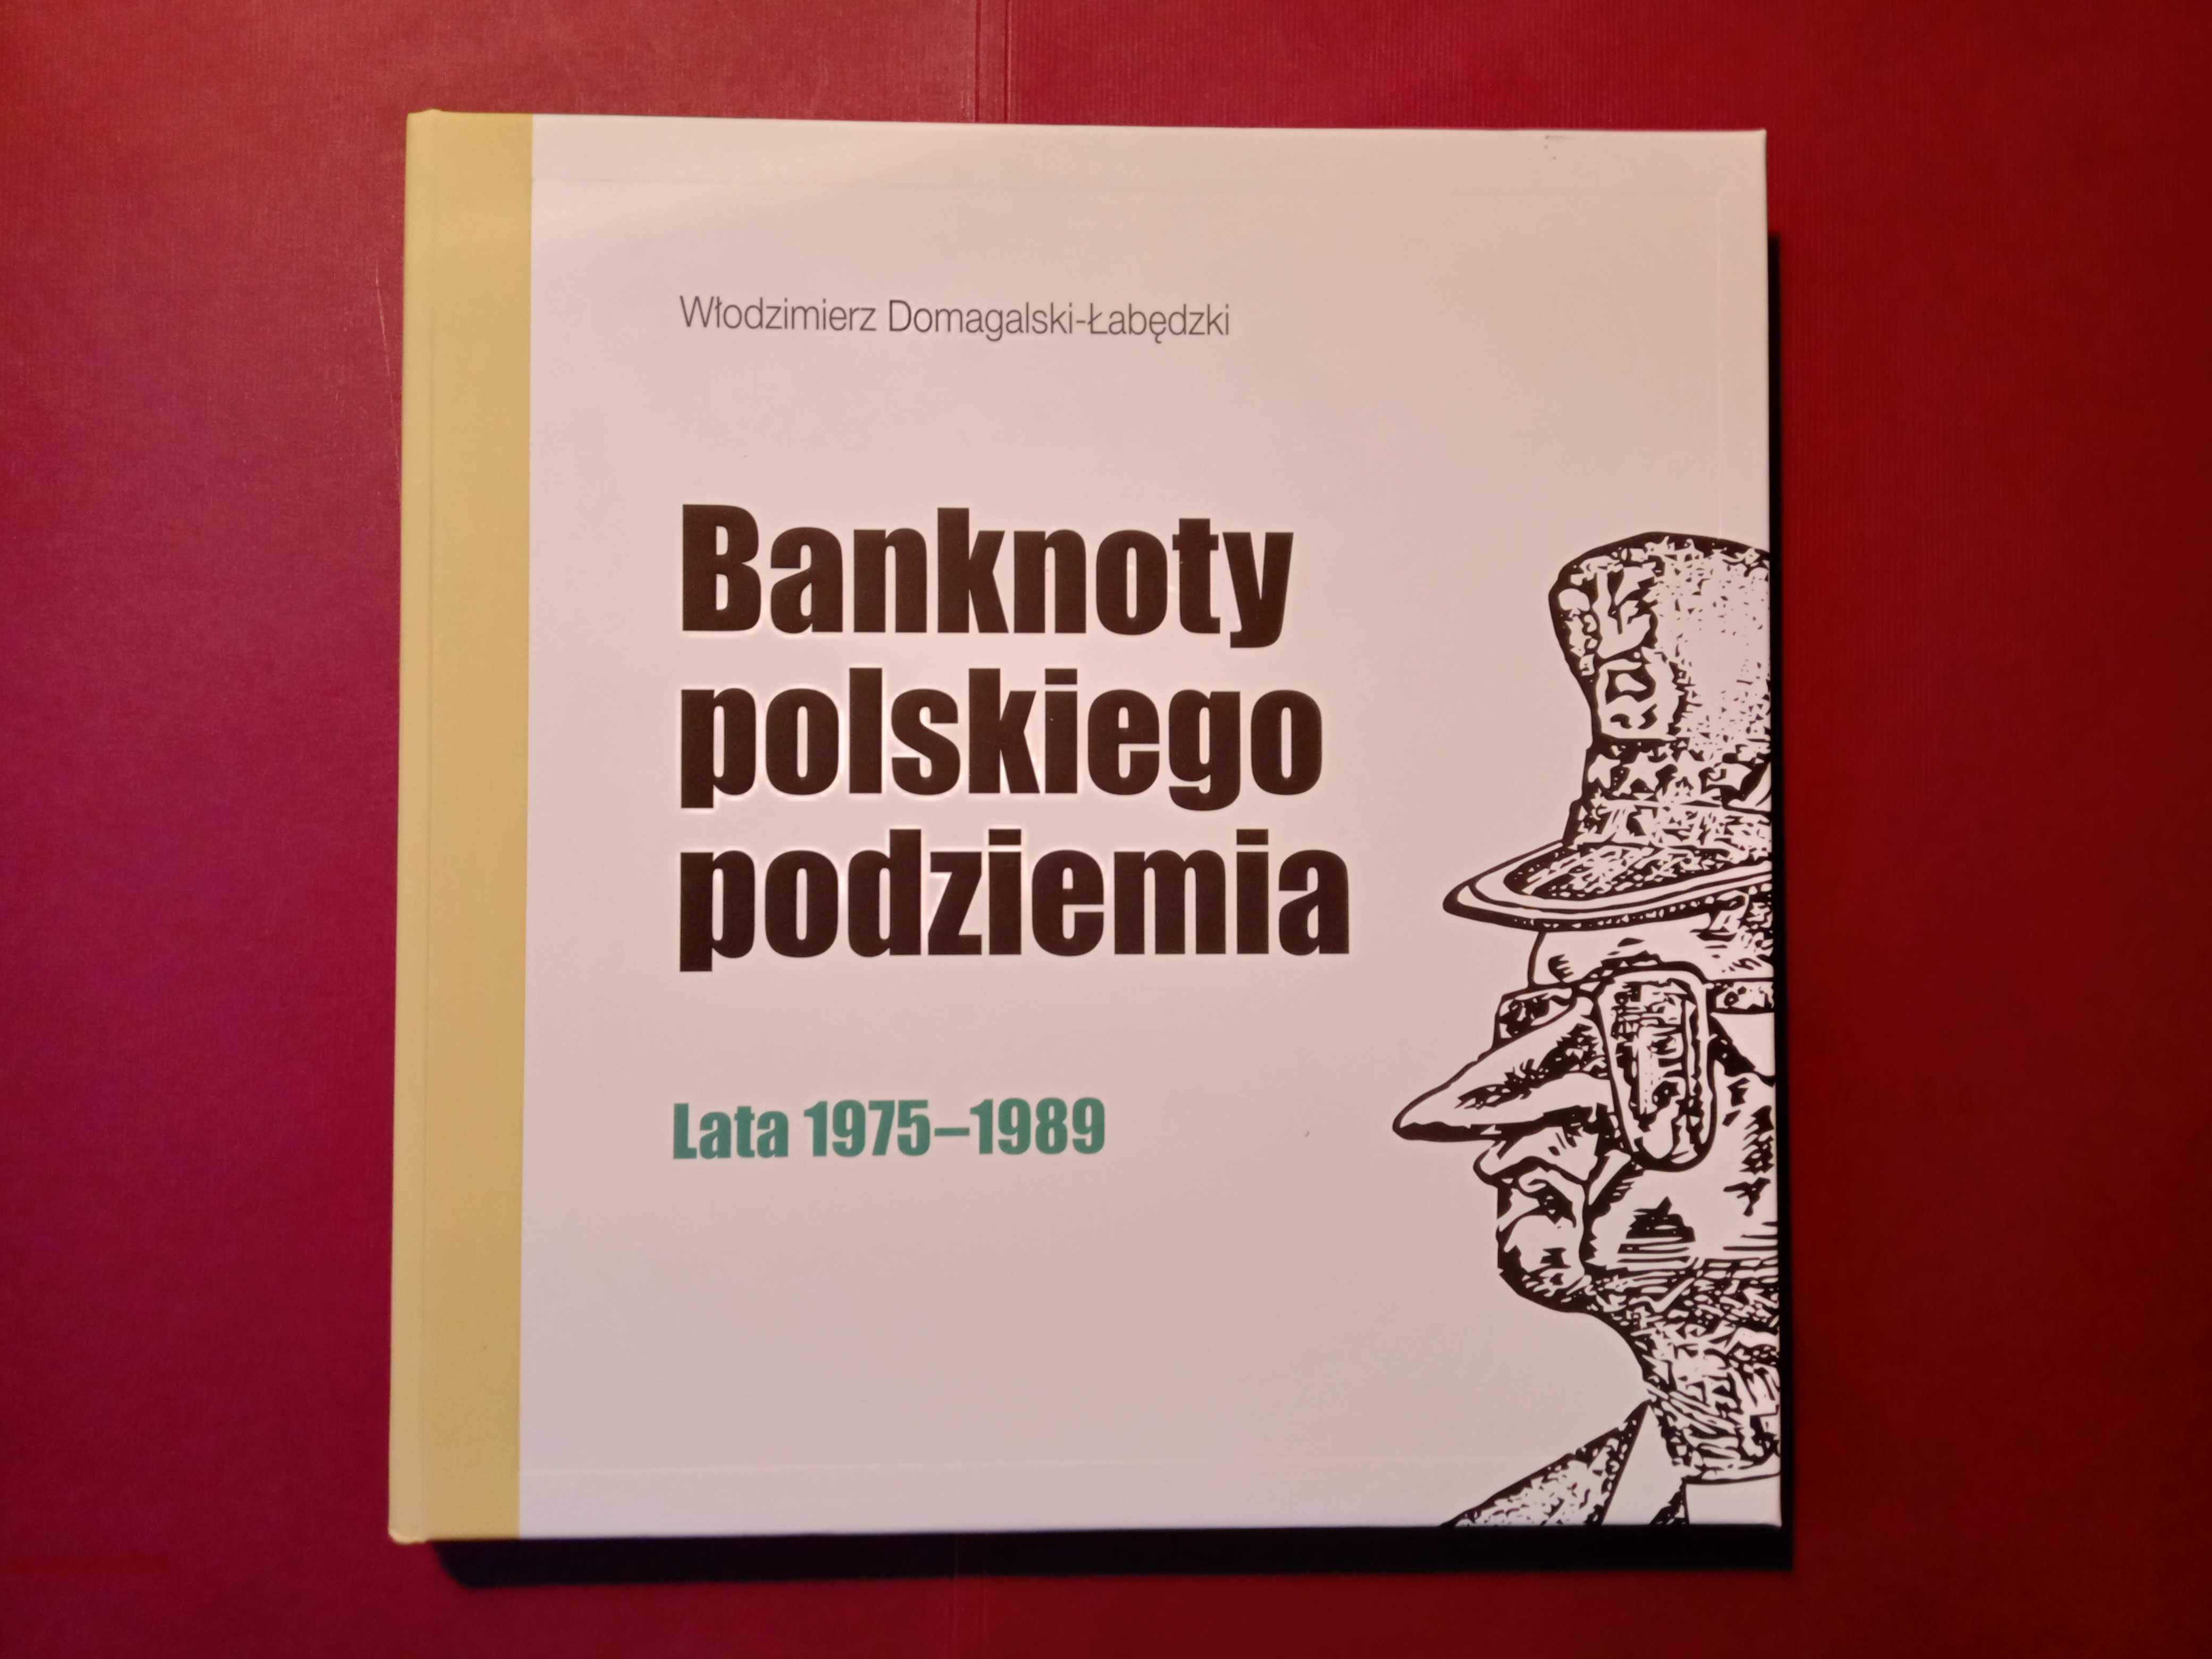 Banknoty polskiego podziemia lata 1975=1989  197 stron